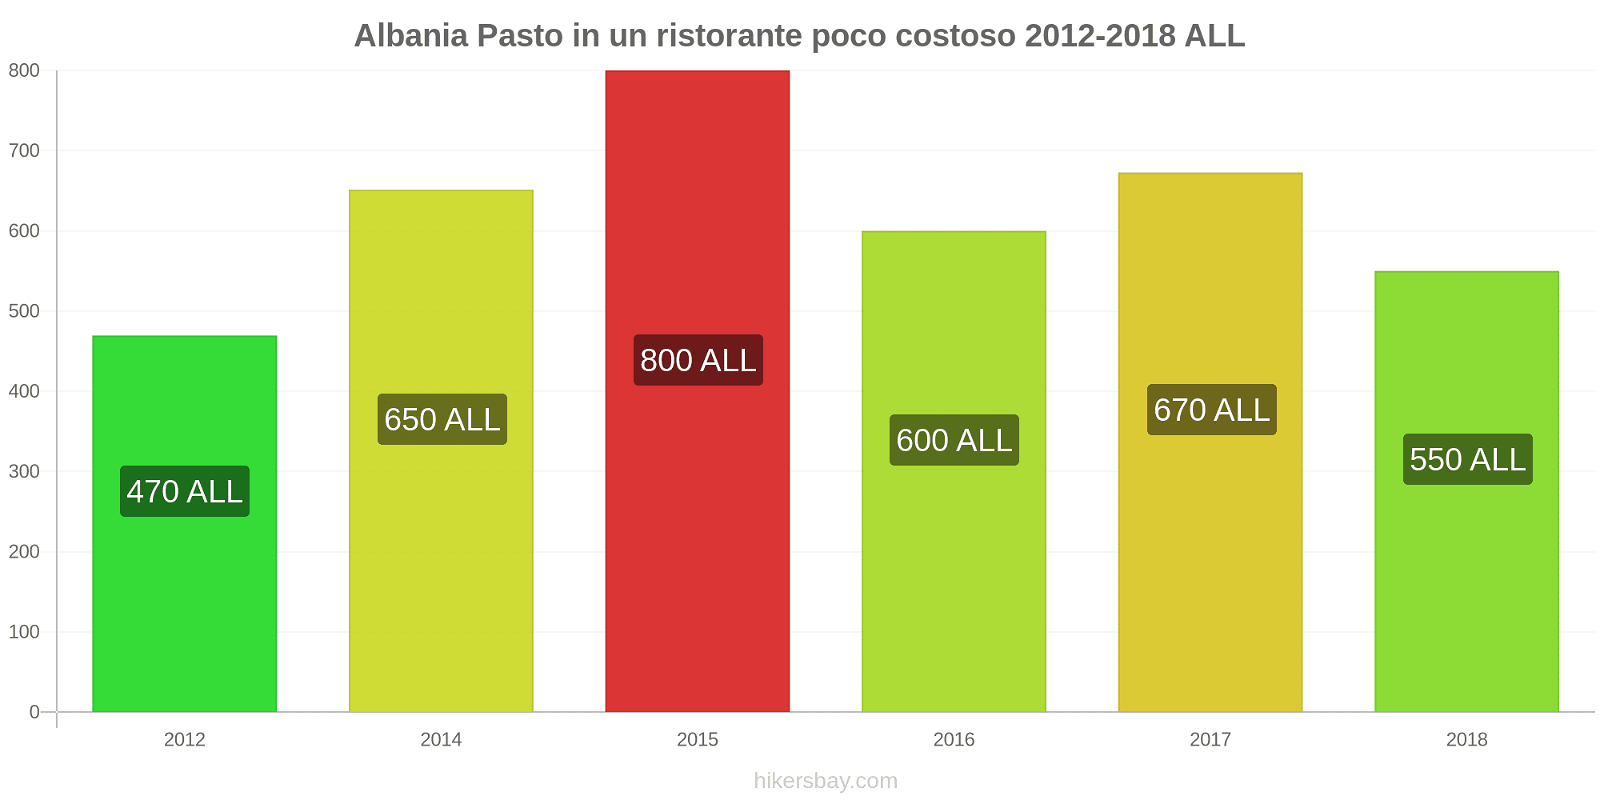 Albania cambi di prezzo Pasto in un ristorante economico hikersbay.com